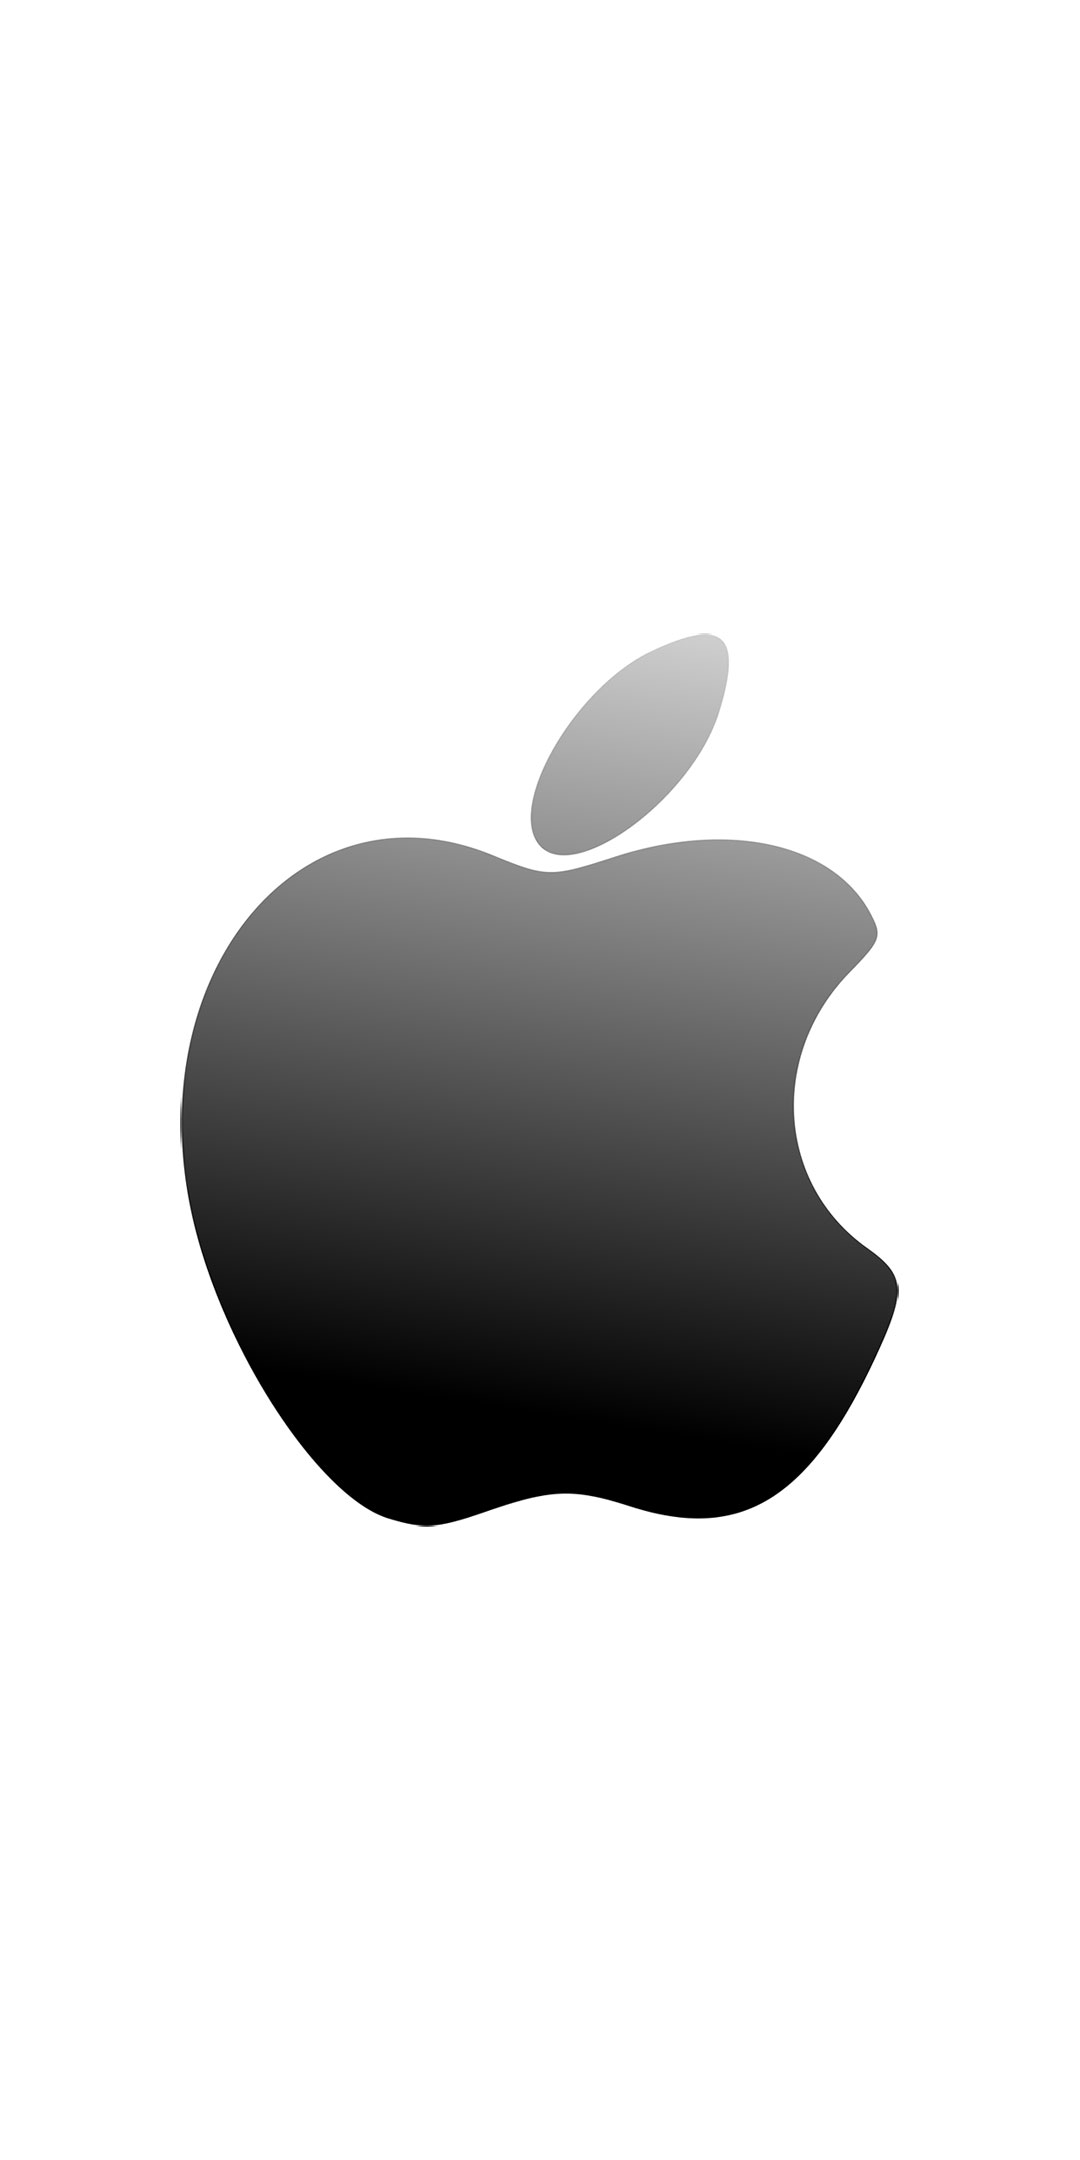 アップル Apple ロゴ の無料待ち受け画像 スマホ壁紙 Iphone Android 2 待ち受けparadise